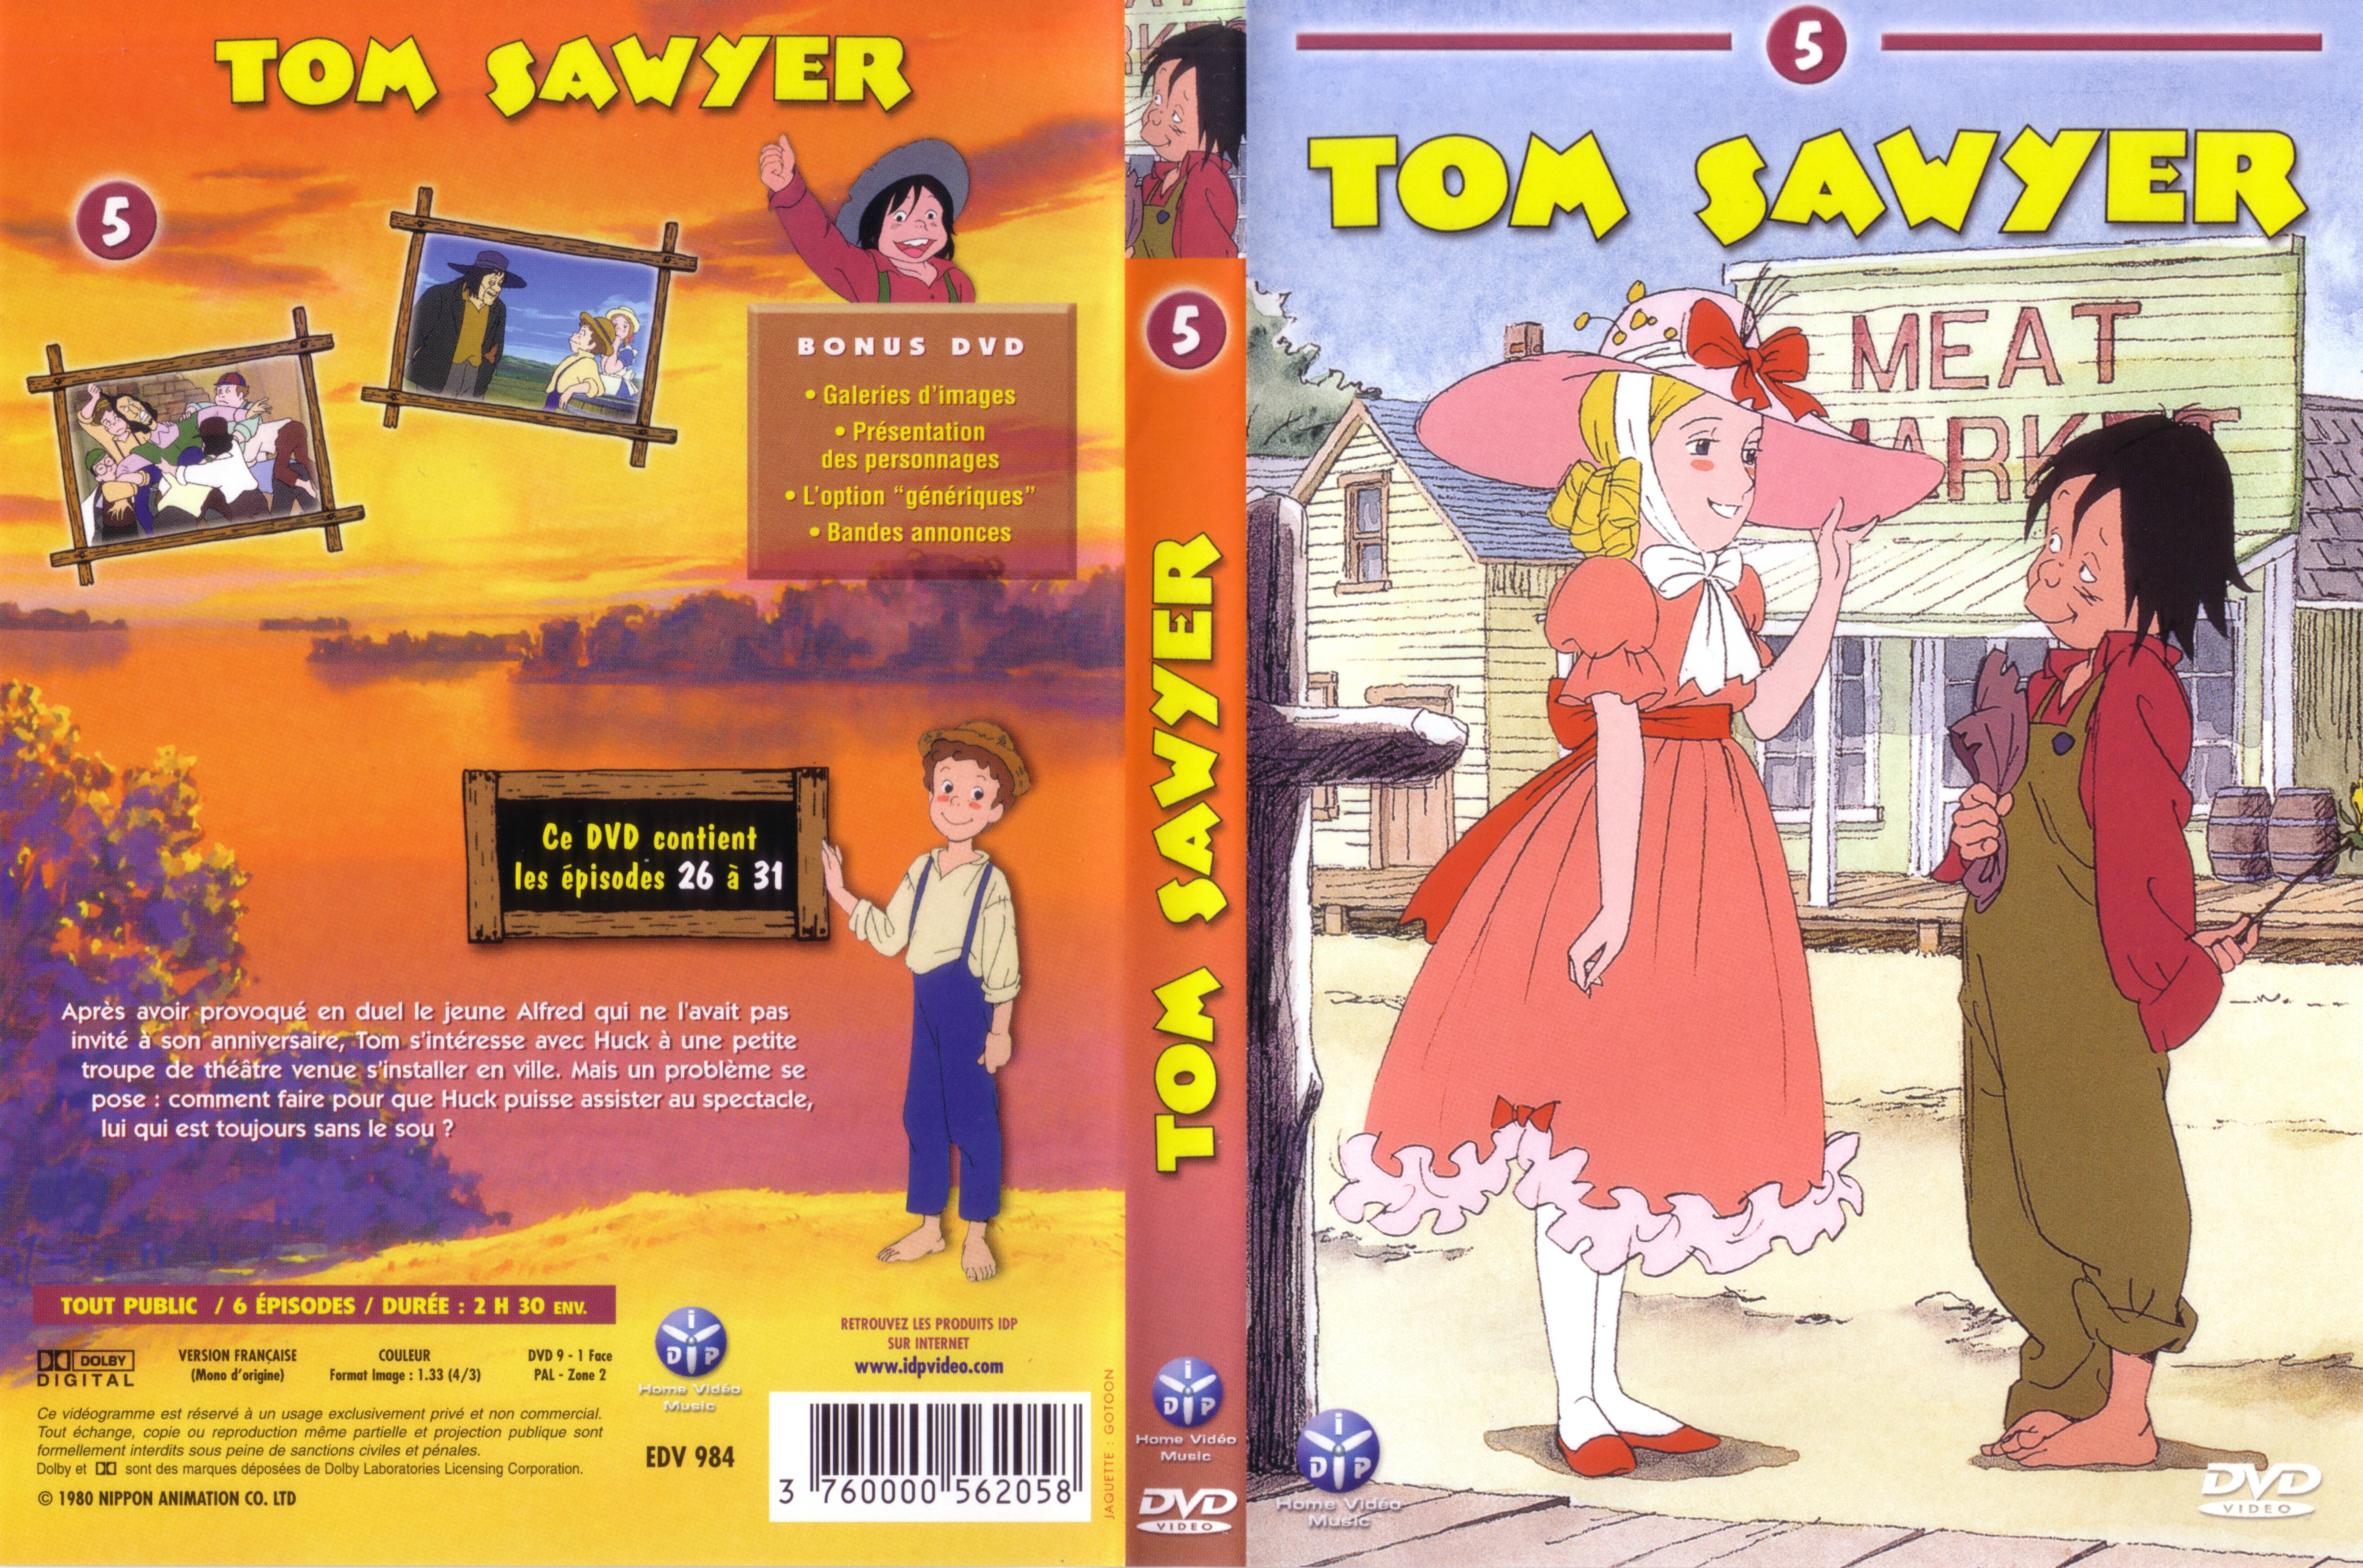 Jaquette DVD Tom Sawyer vol 5 v2